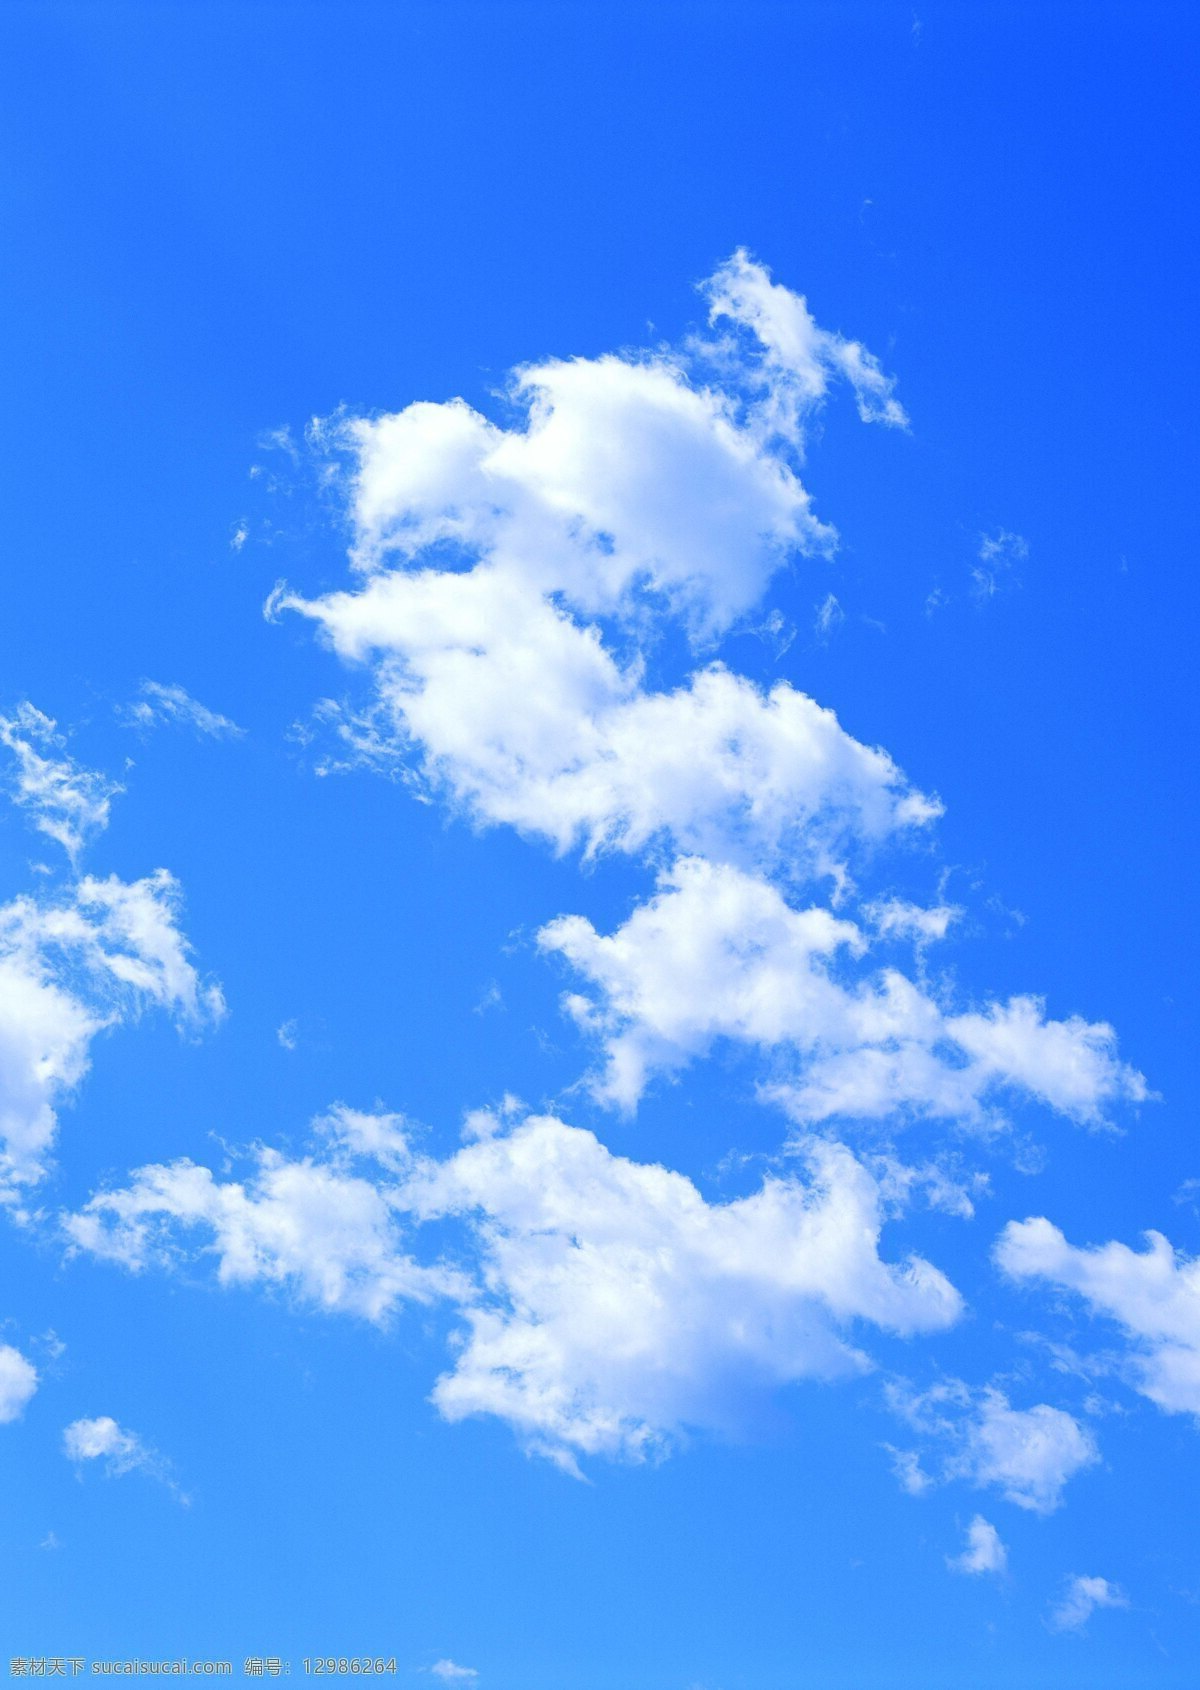 天空免费下载 大自然 晴天 摄影图 天 天空 天空云彩 自然景观 藍天 藍色 白雲 风景 生活 旅游餐饮